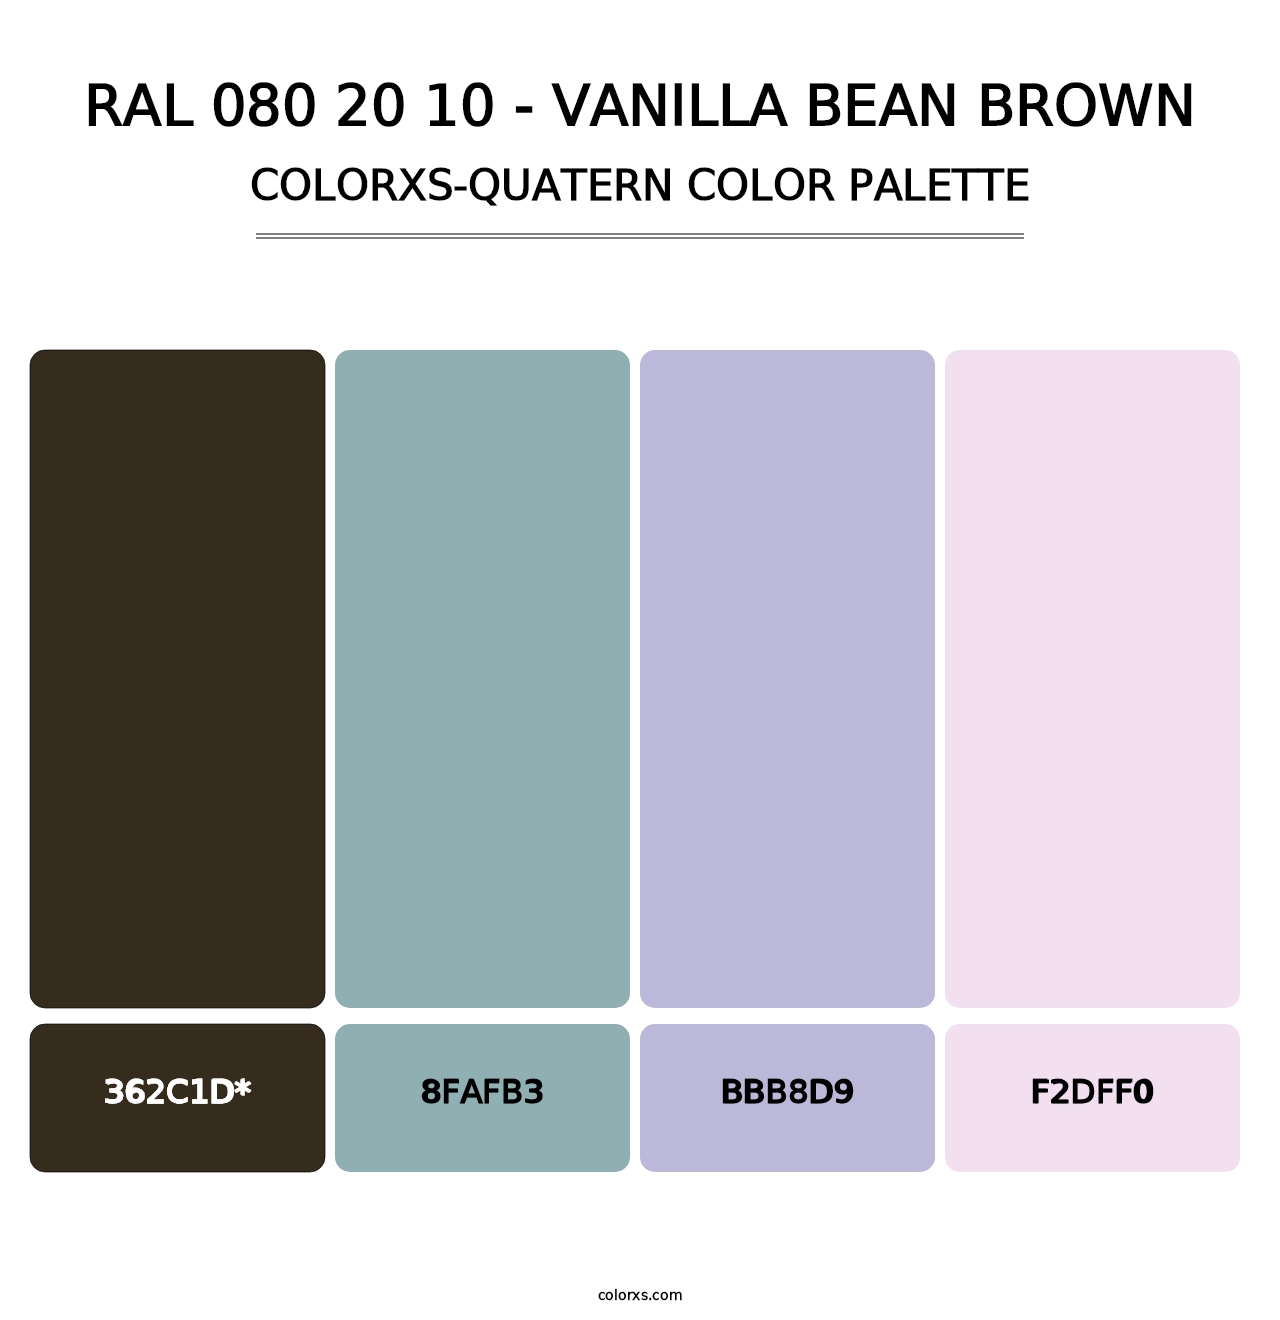 RAL 080 20 10 - Vanilla Bean Brown - Colorxs Quatern Palette